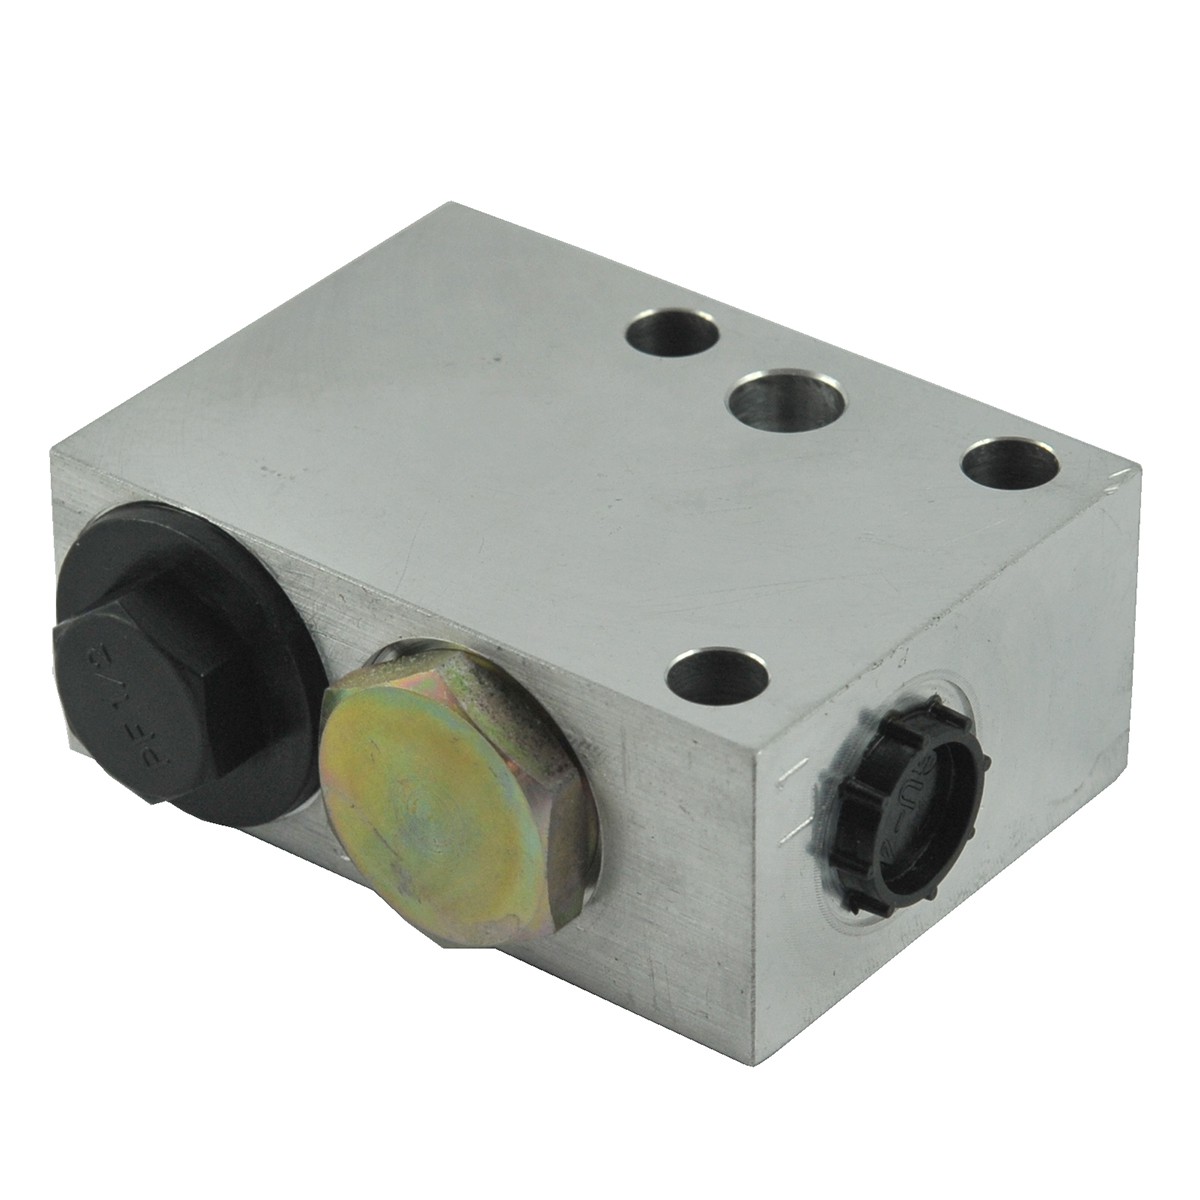 Coolant control valve / LS PLUS 70 / LS PLUS 80 / LS PLUS 90 / G640 / 40030330